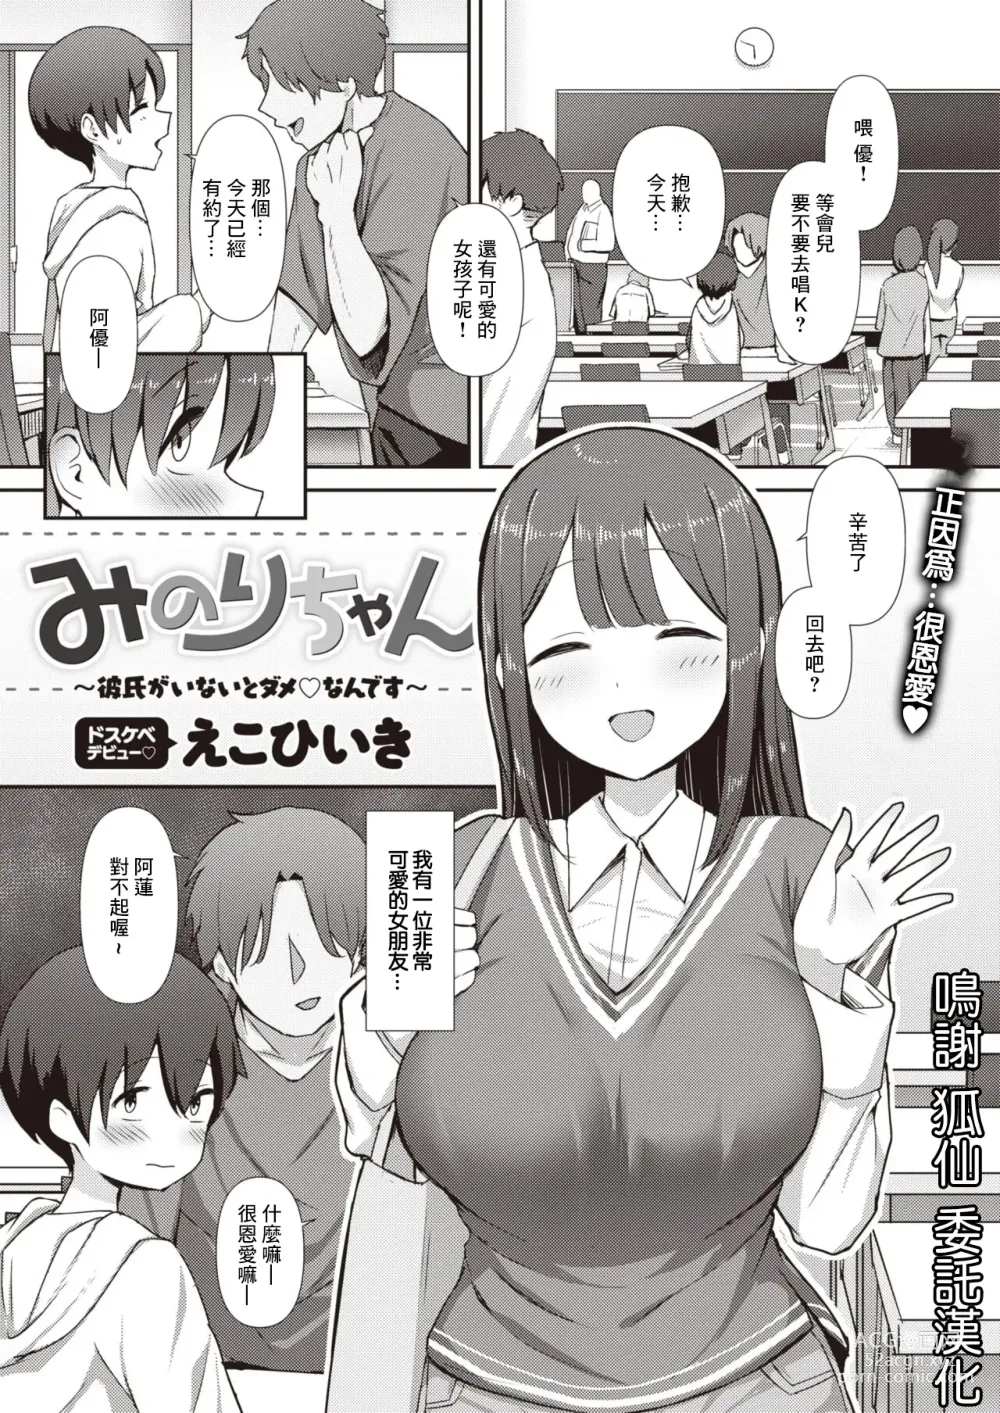 Page 2 of manga Minori-chan ~Kareshi ga Inai to Dame Nandesu~